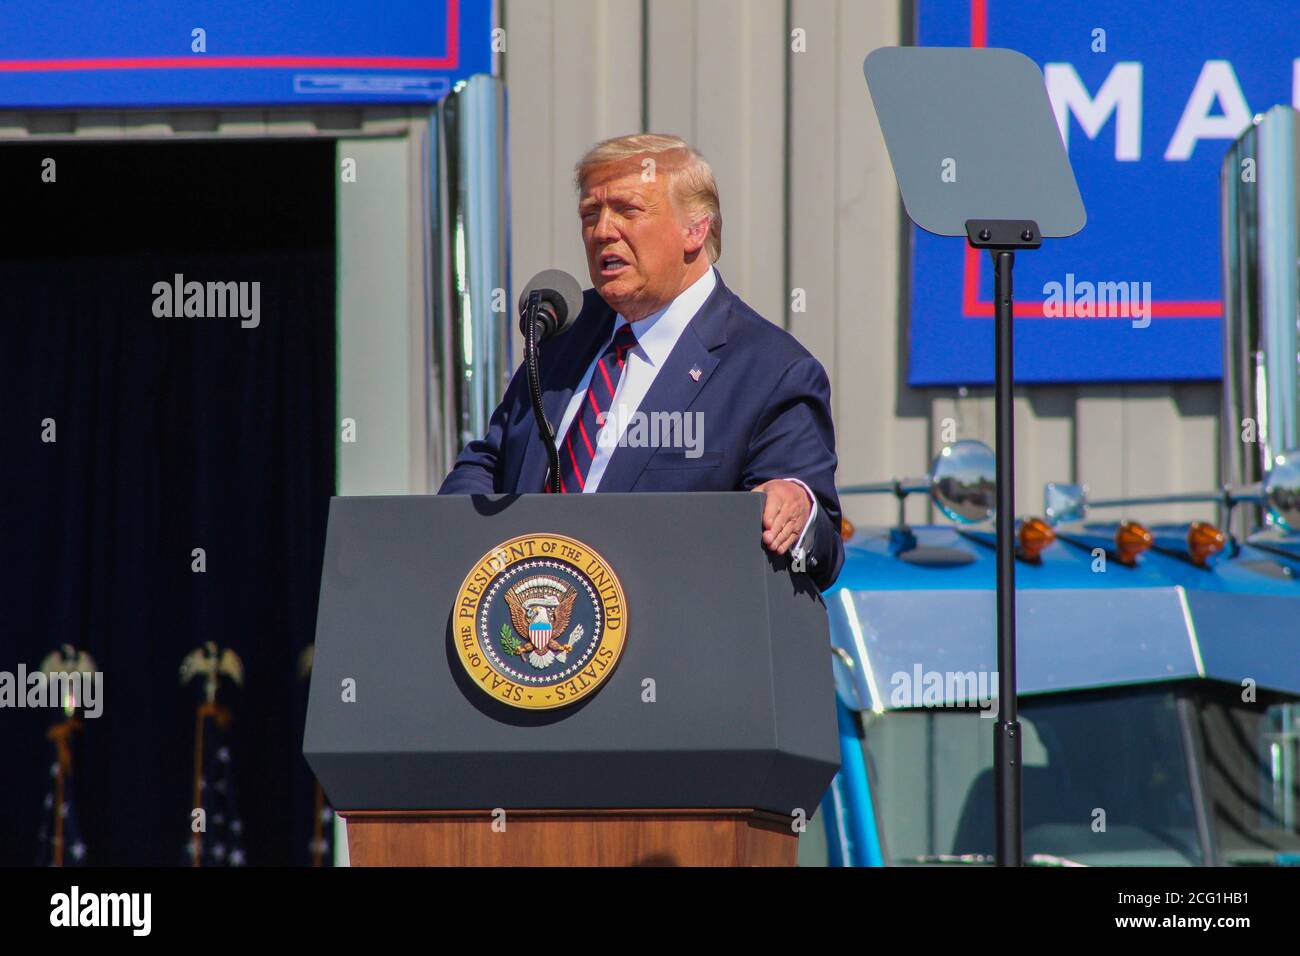 Le 45e président des États-Unis Donald J. Trump parle lors d'un événement à Old Forge, Pennsylvanie, où il a clamé son adversaire Joe Biden qui est de la région. Banque D'Images